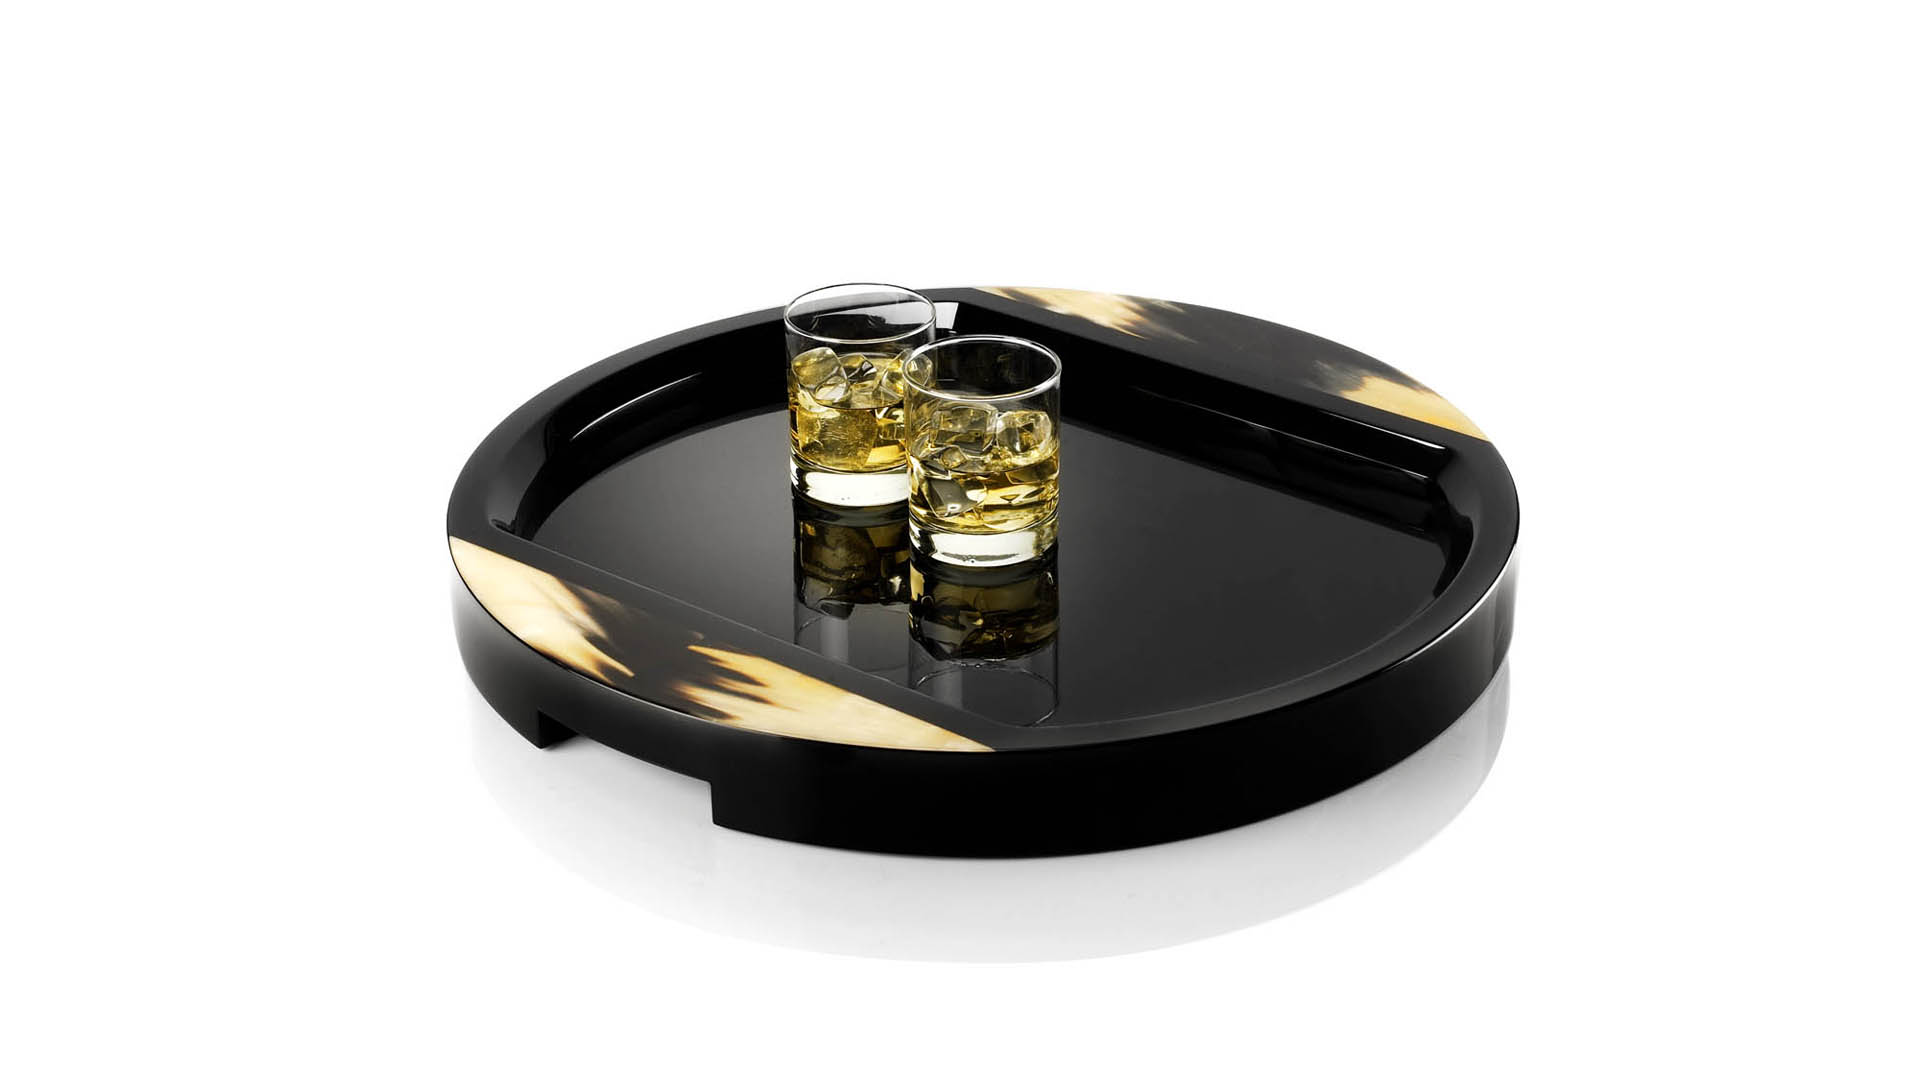 Accessori tavola - Gillo vassoio in legno laccato lucido nero - copertina - Arcahorn